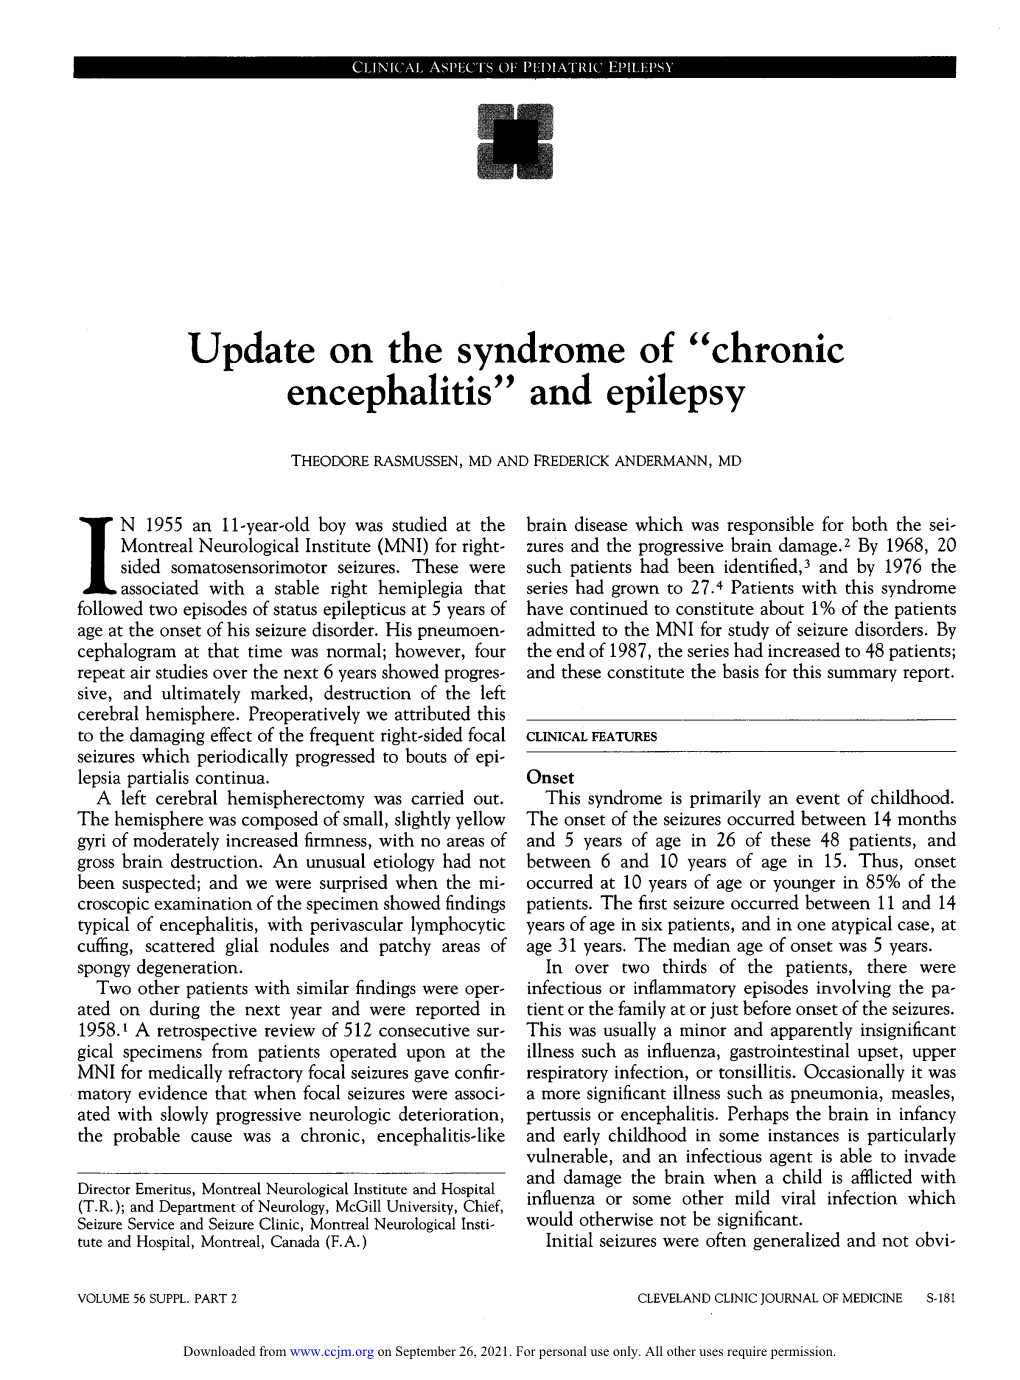 "Chronic Encephalitis" and Epilepsy